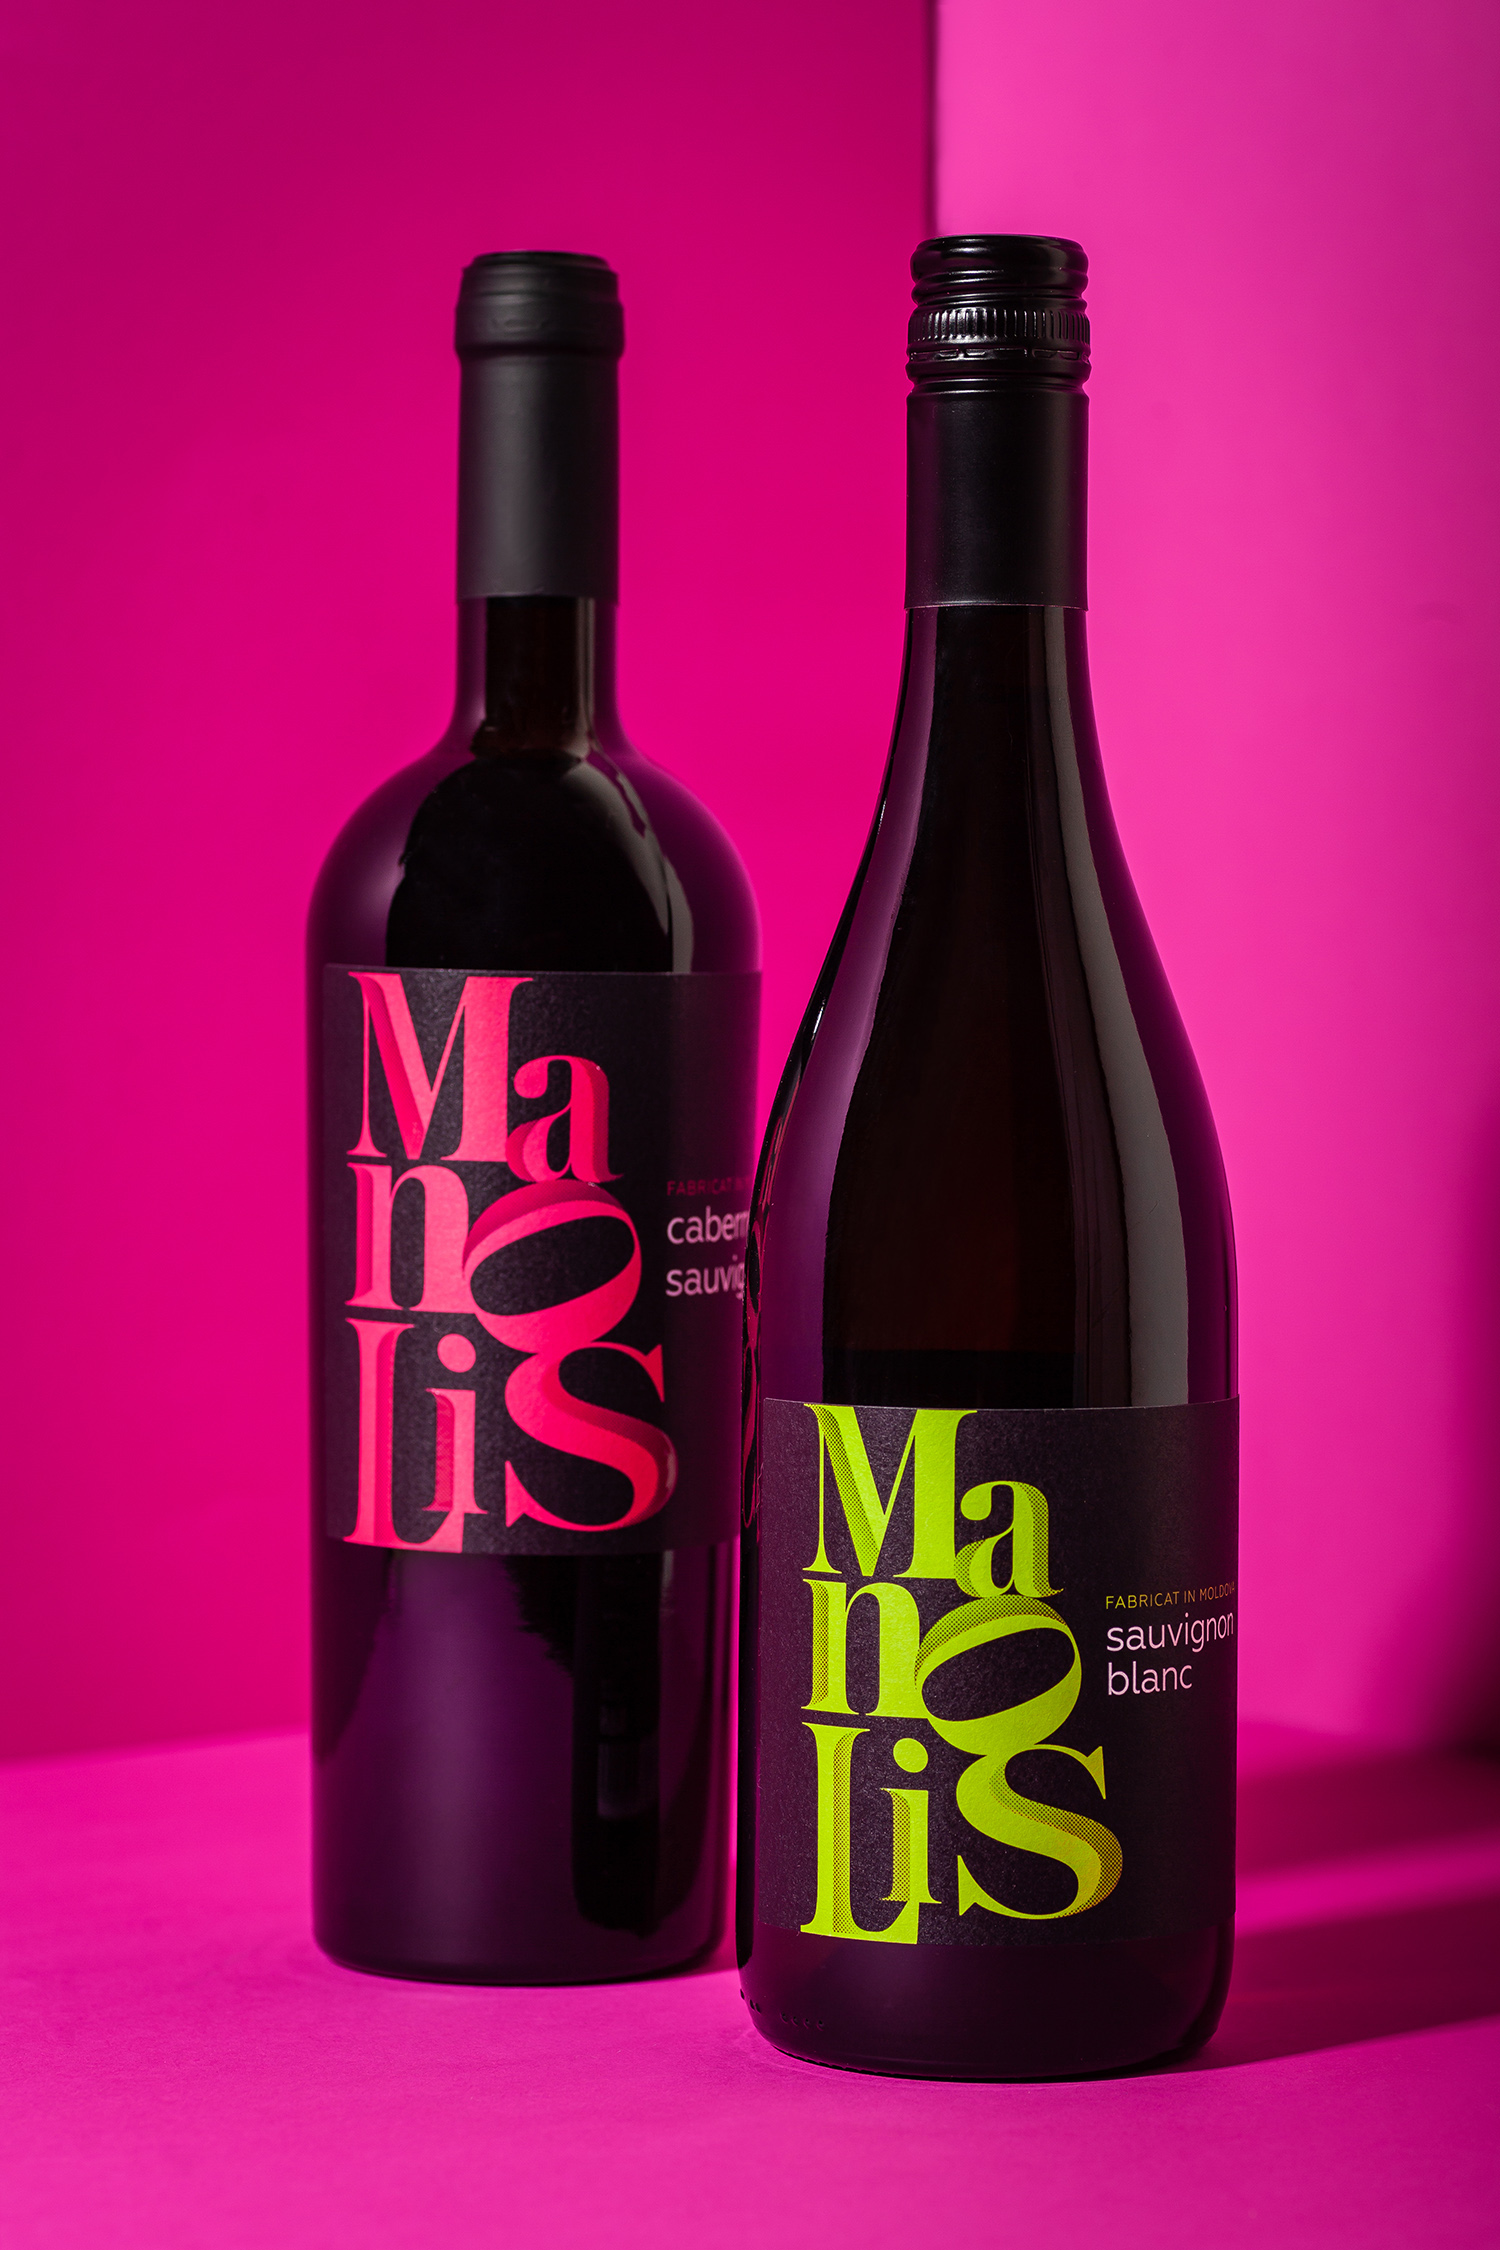 时尚的字体排版 Manolis葡萄酒包装设计